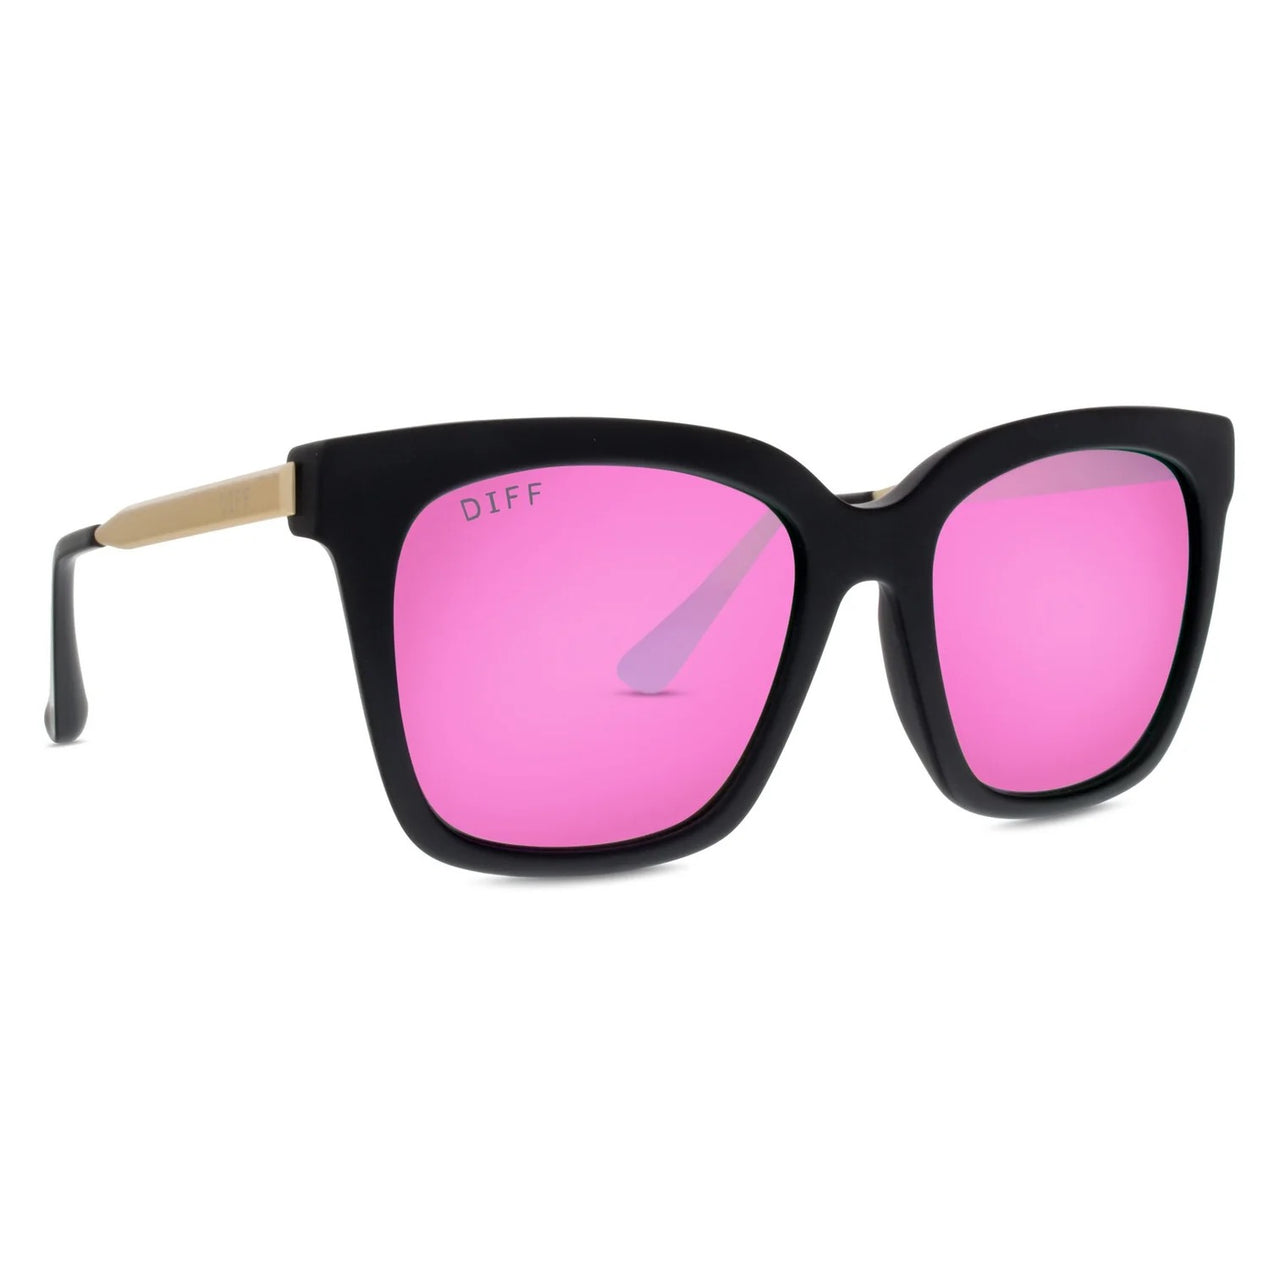 Bella- matte black + pink mirror polarized sunglasses